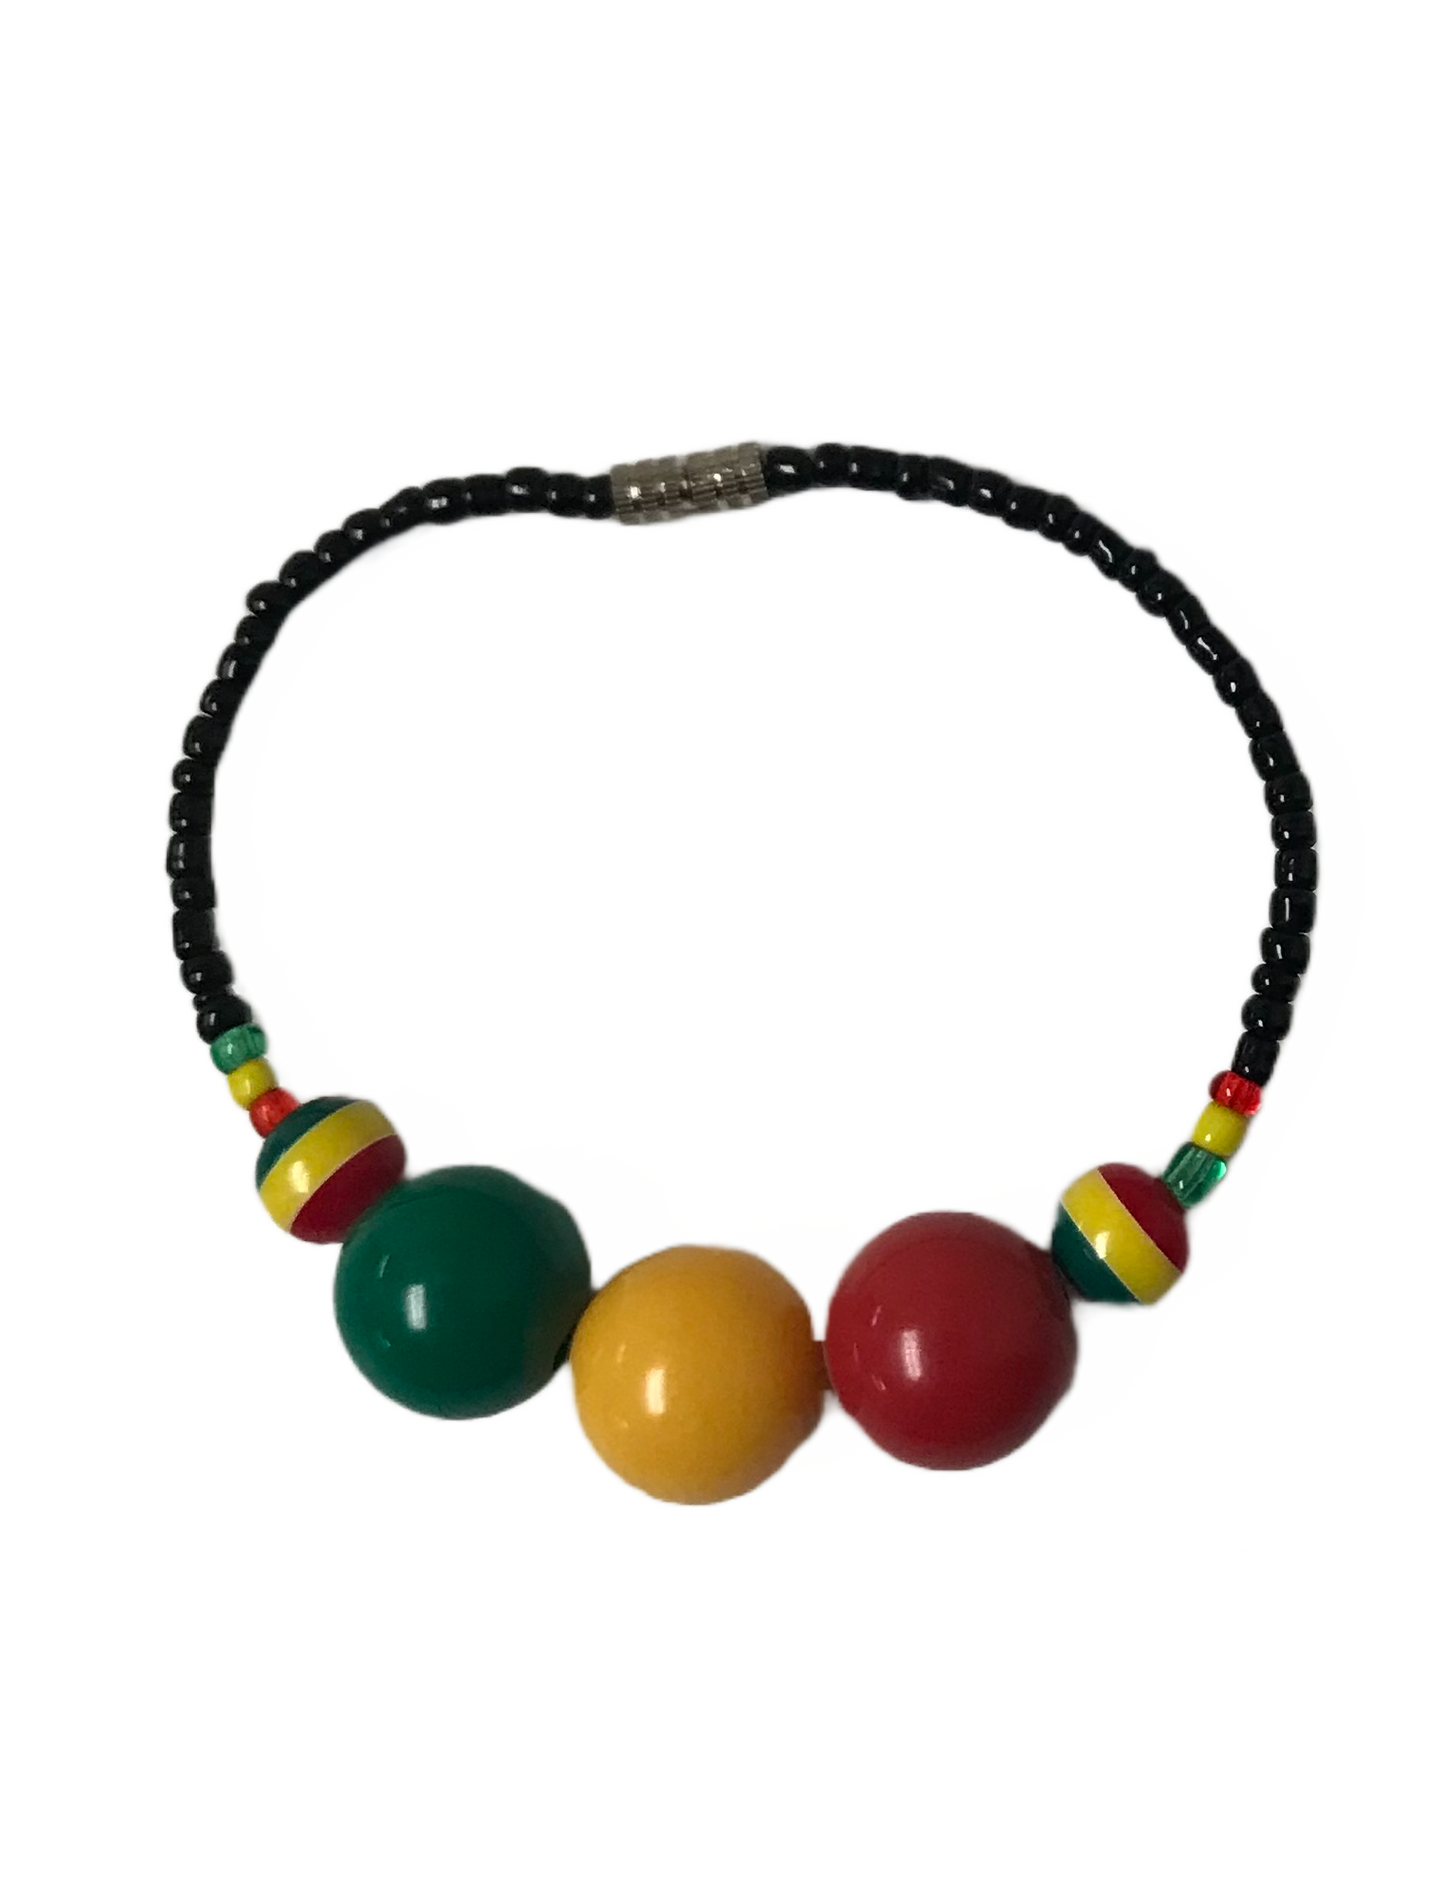 Sparkle Stone Beads Wristband Bracelet Jewelry